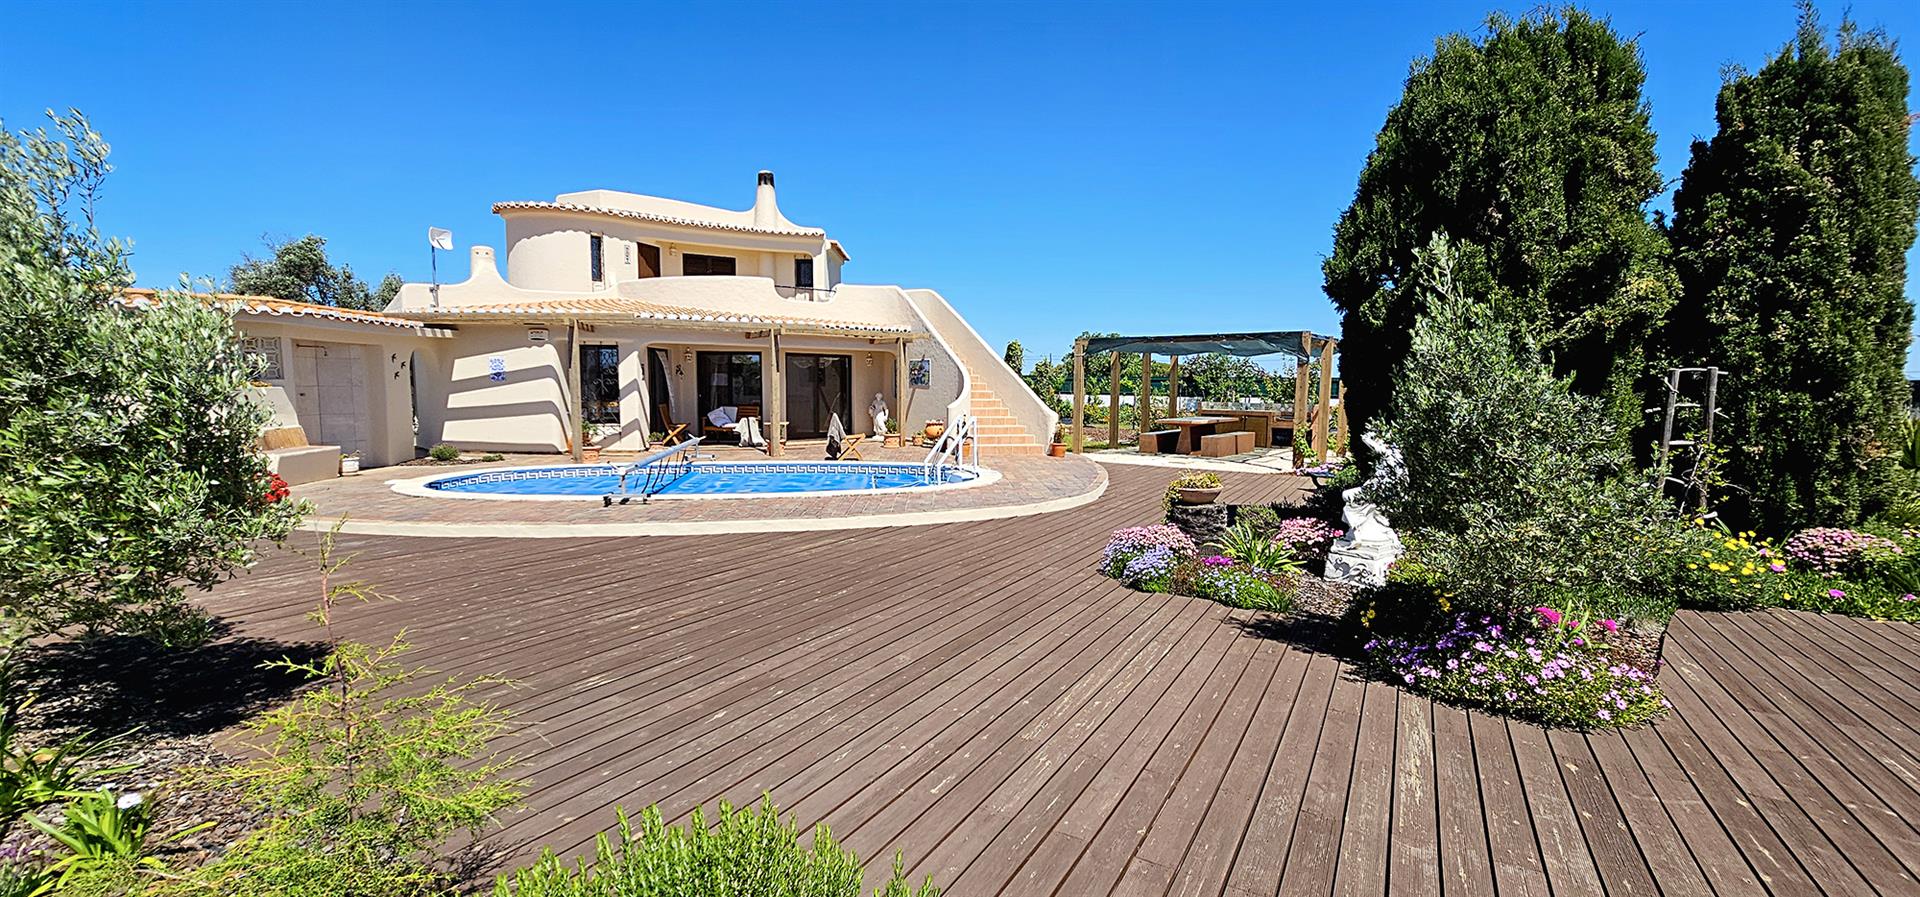 Bienvenue dans votre future maison belle Algarve